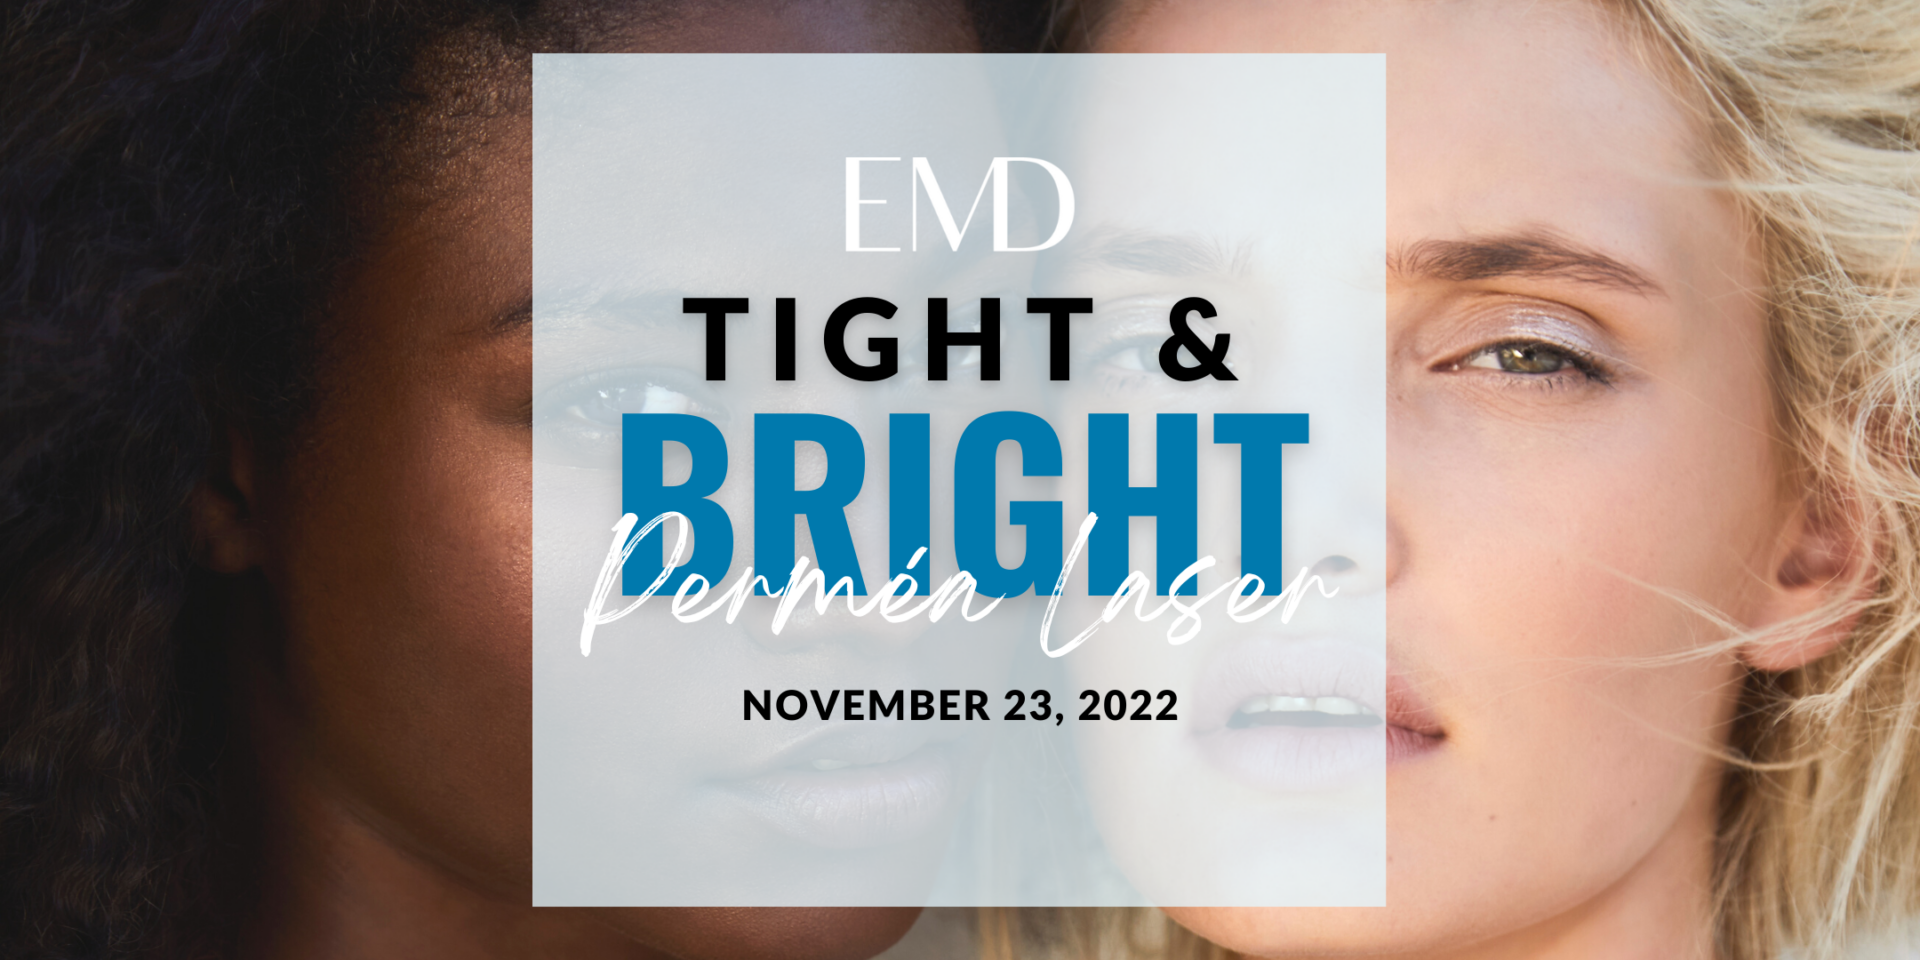 tightandbright emd event